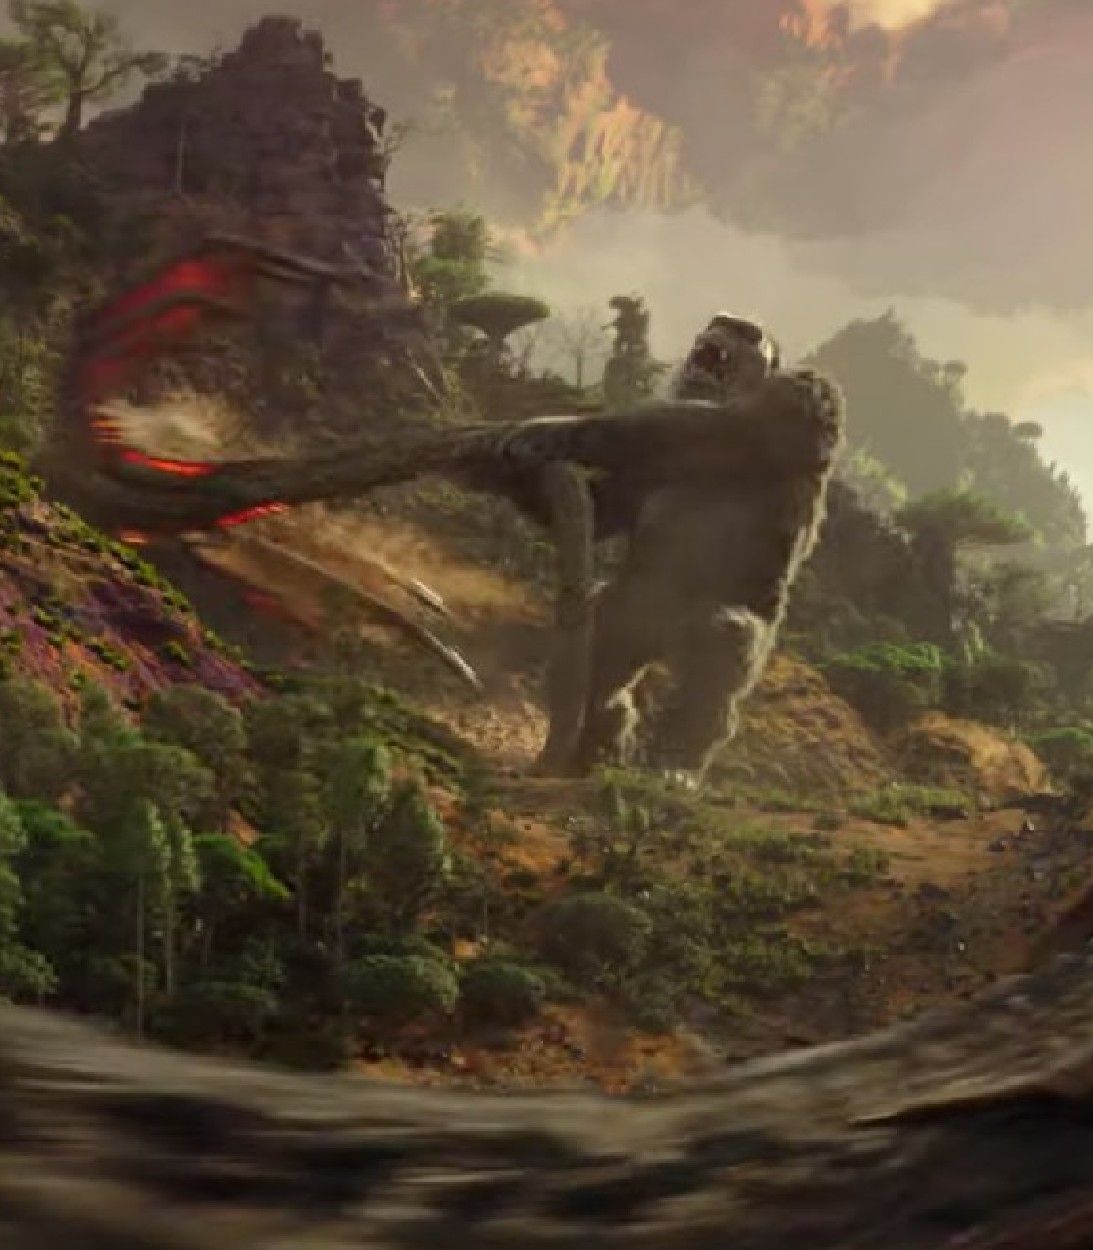 Godzilla vs kong vs warbat Trailer